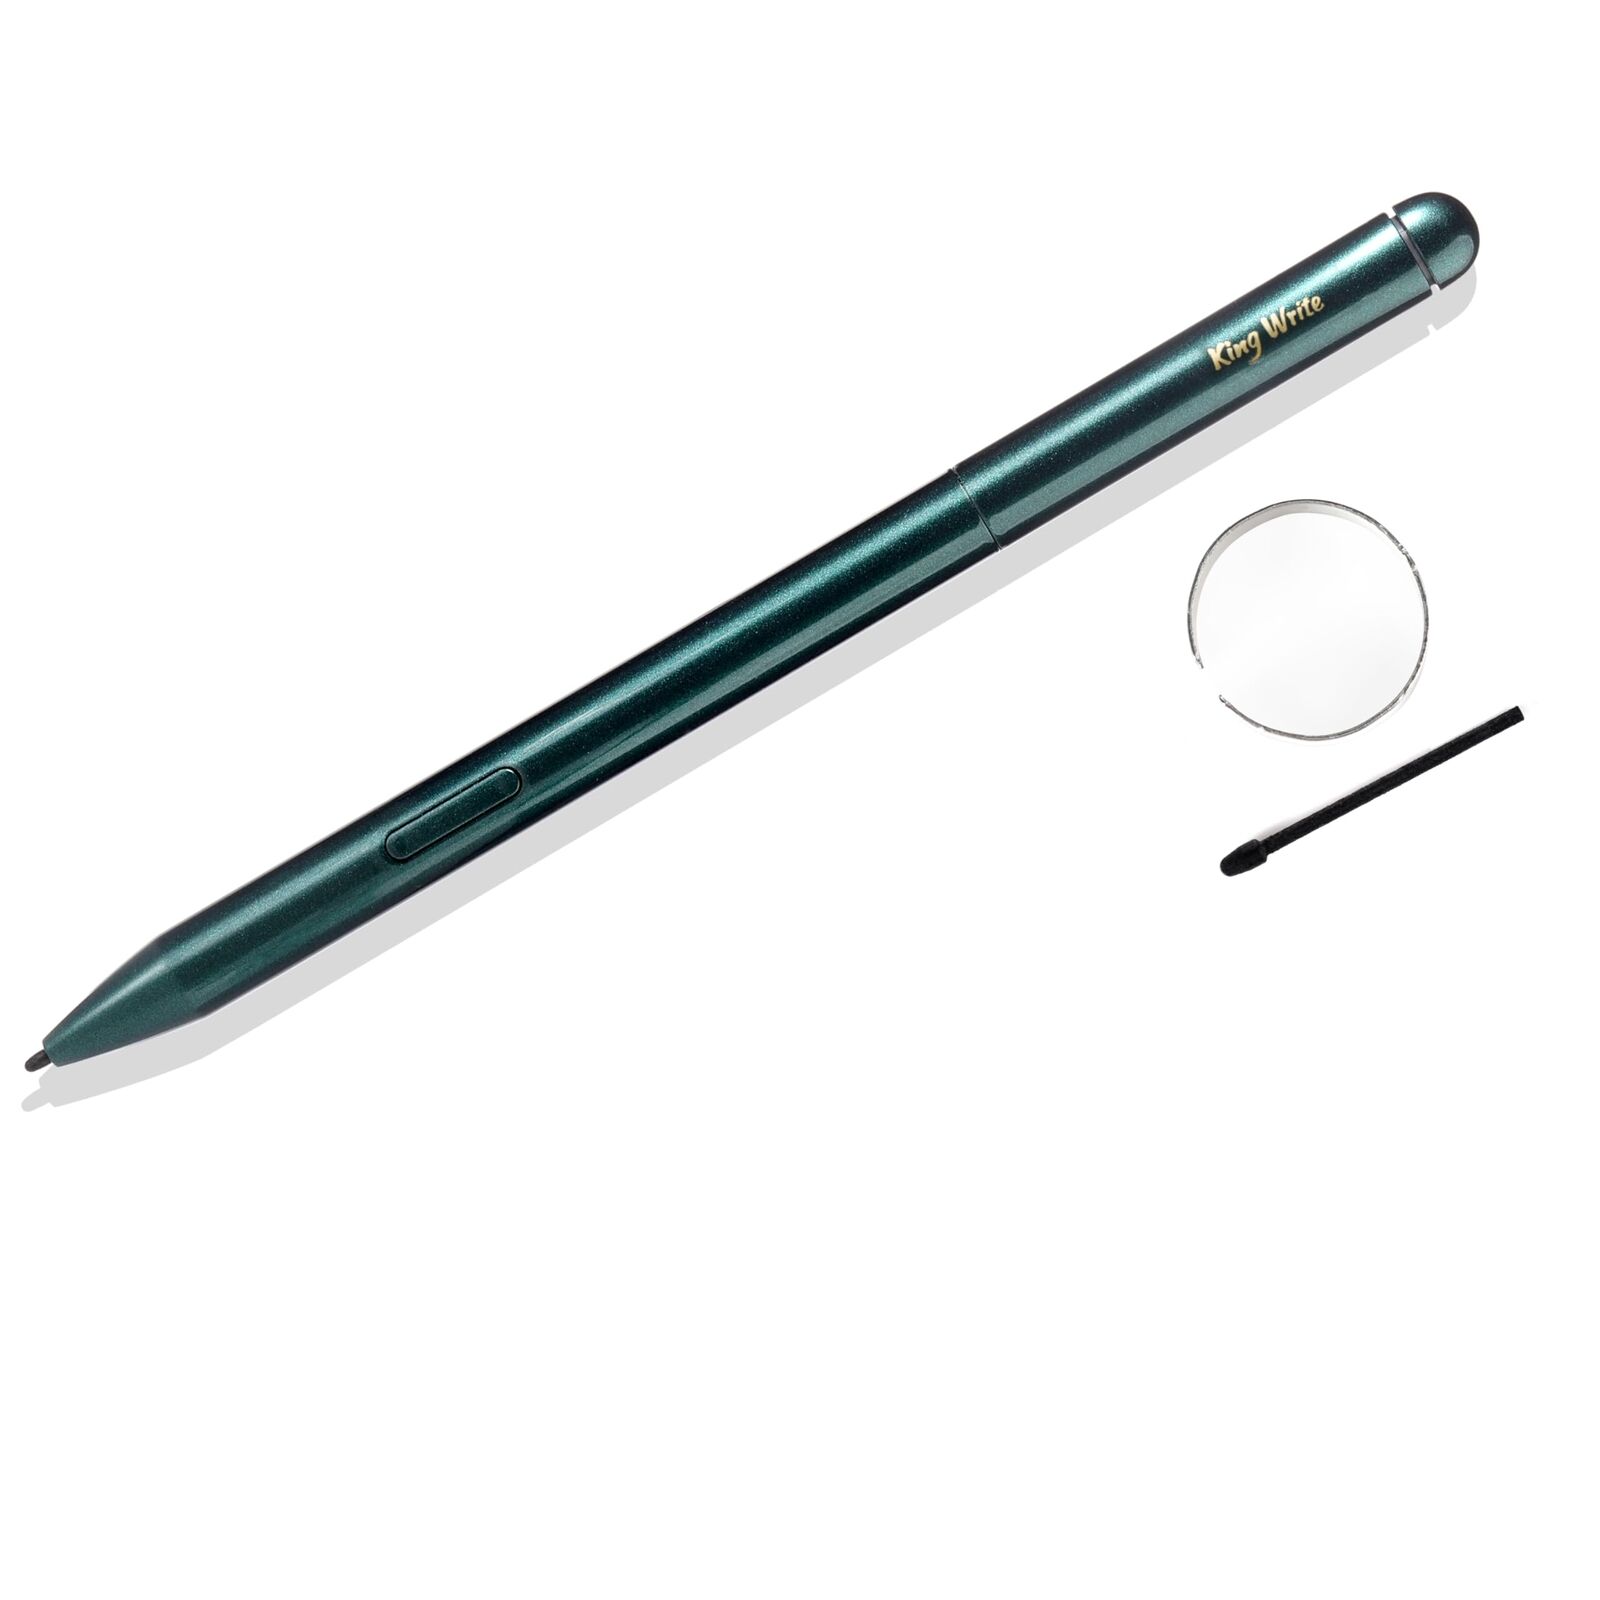 MR05 EMR Stylus for Remarkable 2 Pen with Digital Eraser, 4096 Pressure Sensi...